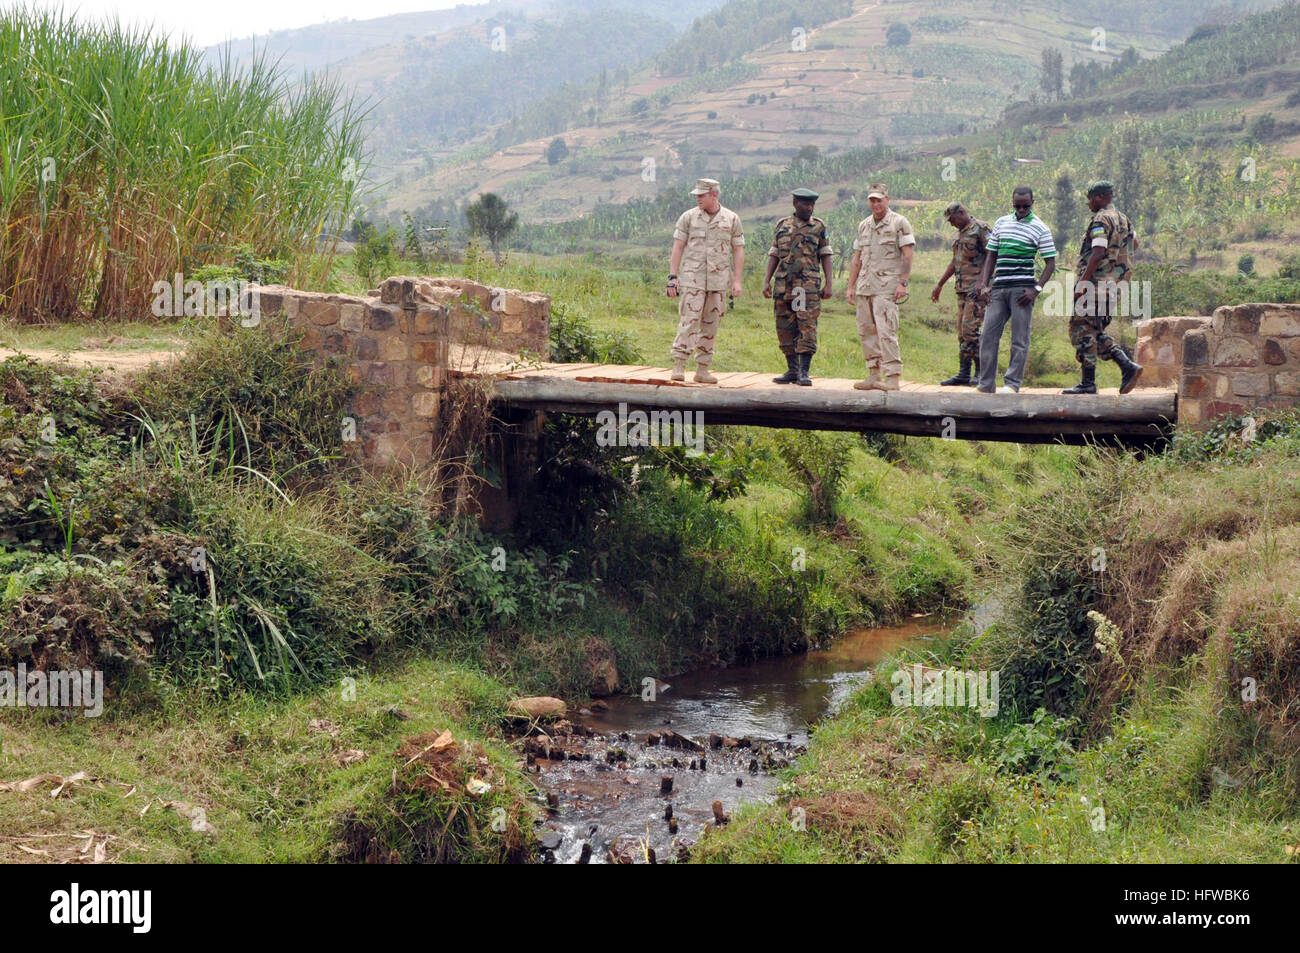 090805-N-4928M-189 KARAMBO, le Rwanda (16 août 2000 5, 2009) Les membres de la Défense Rwandaises montrent le lieutenant Darren Denyer et maîtres d'officier de 2e classe Mark Sainte-claire, tous deux assignés à l'Équipe des affaires civile maritime (MCAT) 104, un pont construit par les forces de défense rwandaises campagne opération civilo-militaire. Concours d-104 s'est rendu au Rwanda pour observer des opérations civiles et militaires dans tout le pays. L'équipe est déployée à Combined Joint Task Force-Horn of Africa de construire des relations durables avec les partenaires africains et de mener des activités d'affaires civiles. (U.S. Photo par marine Chef de la communication de masse Spe Banque D'Images